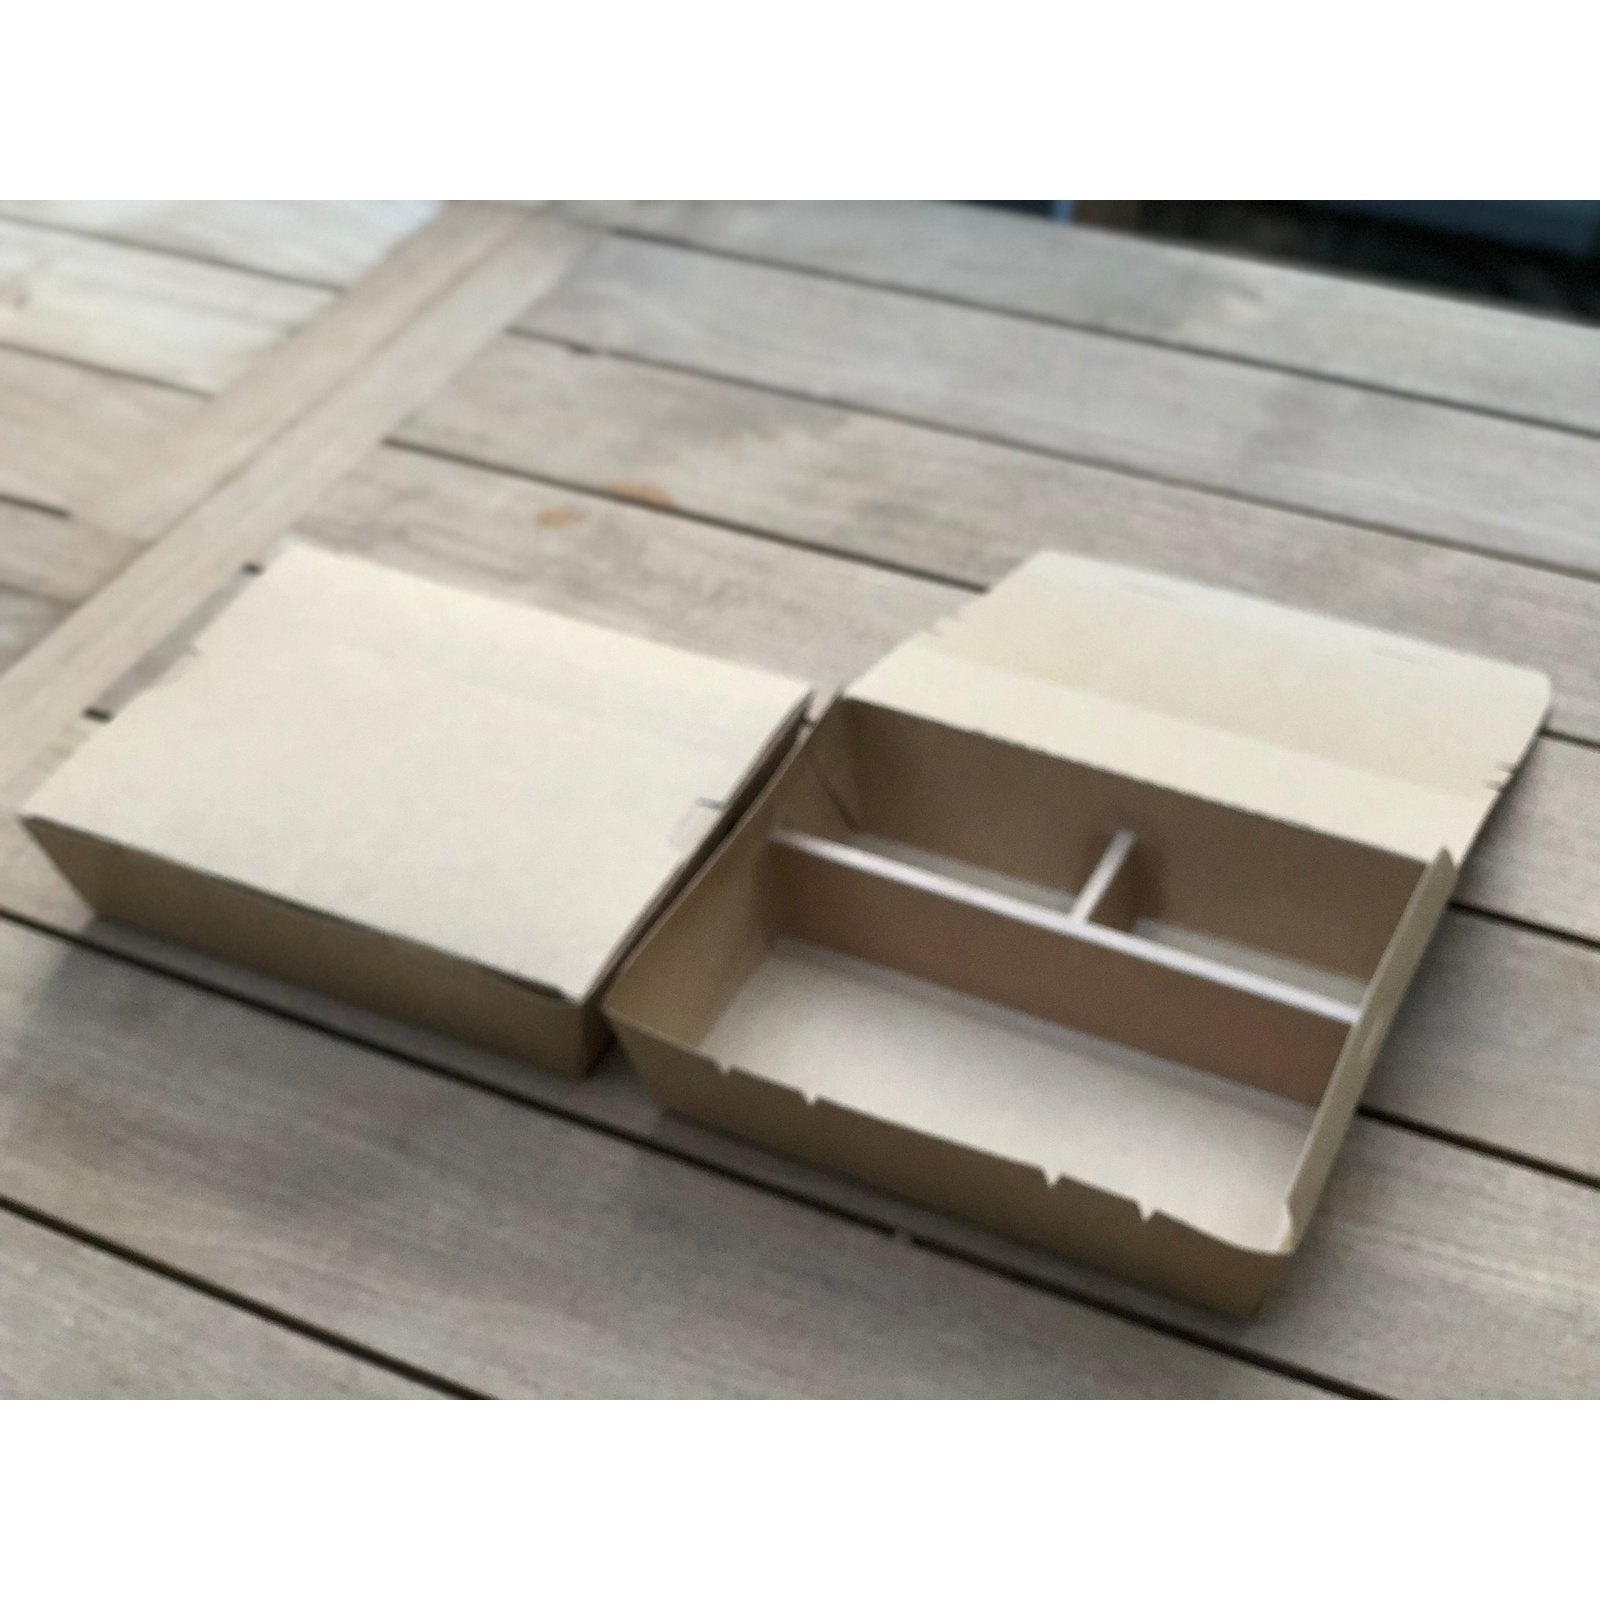 Bento Boxes- 10.6x10.6x2.3 (200 Sets)